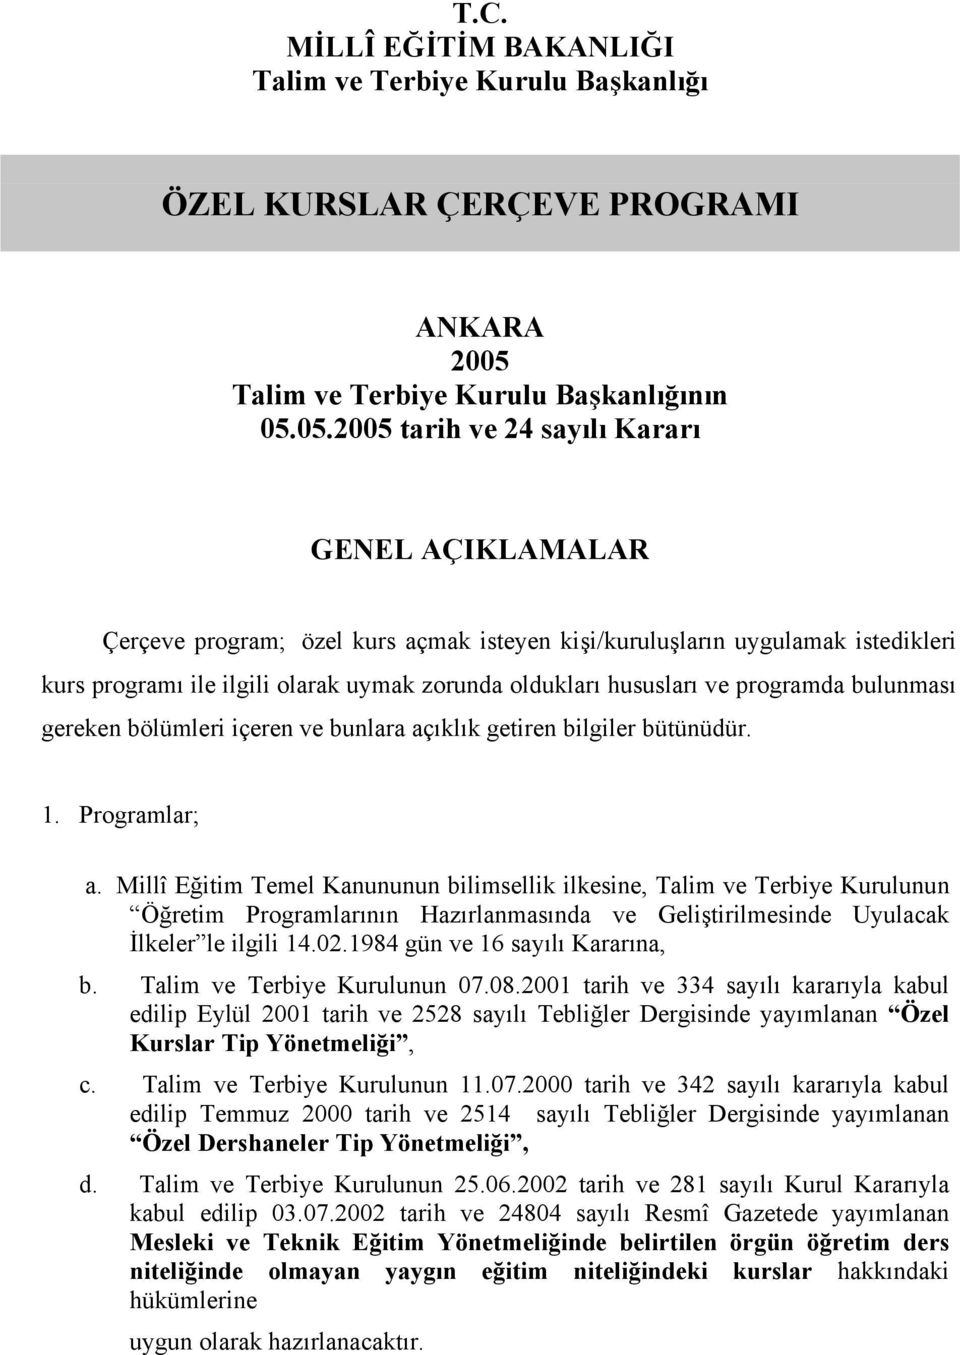 ÖZEL KURSLAR ÇERÇEVE PROGRAMI - PDF Ücretsiz indirin